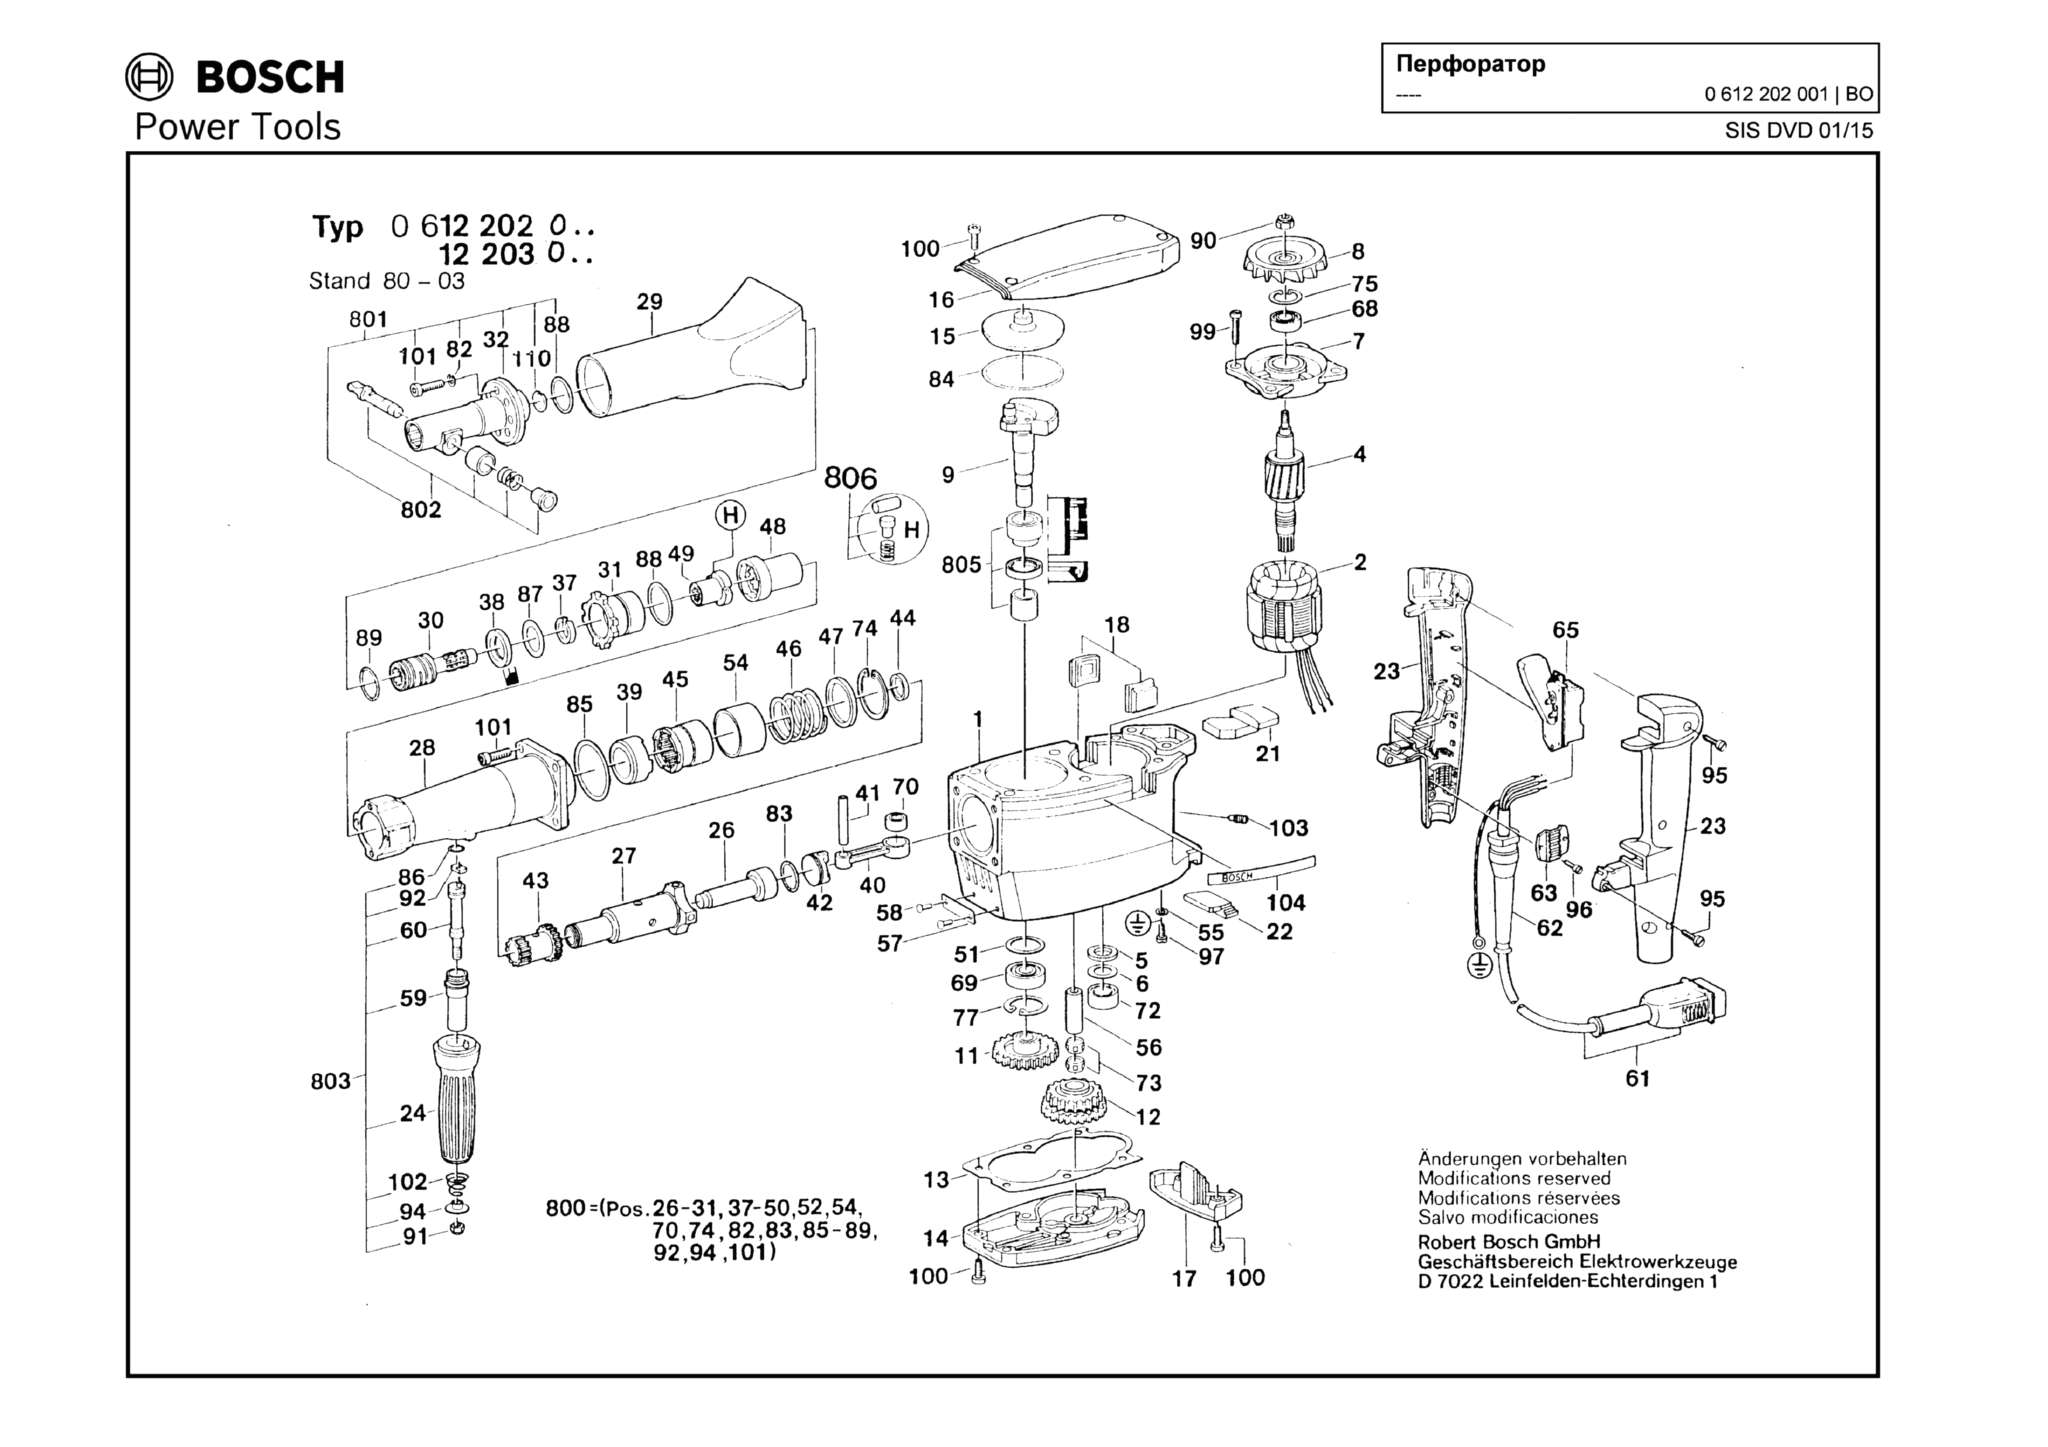 Запчасти, схема и деталировка Bosch (ТИП 0612202001)